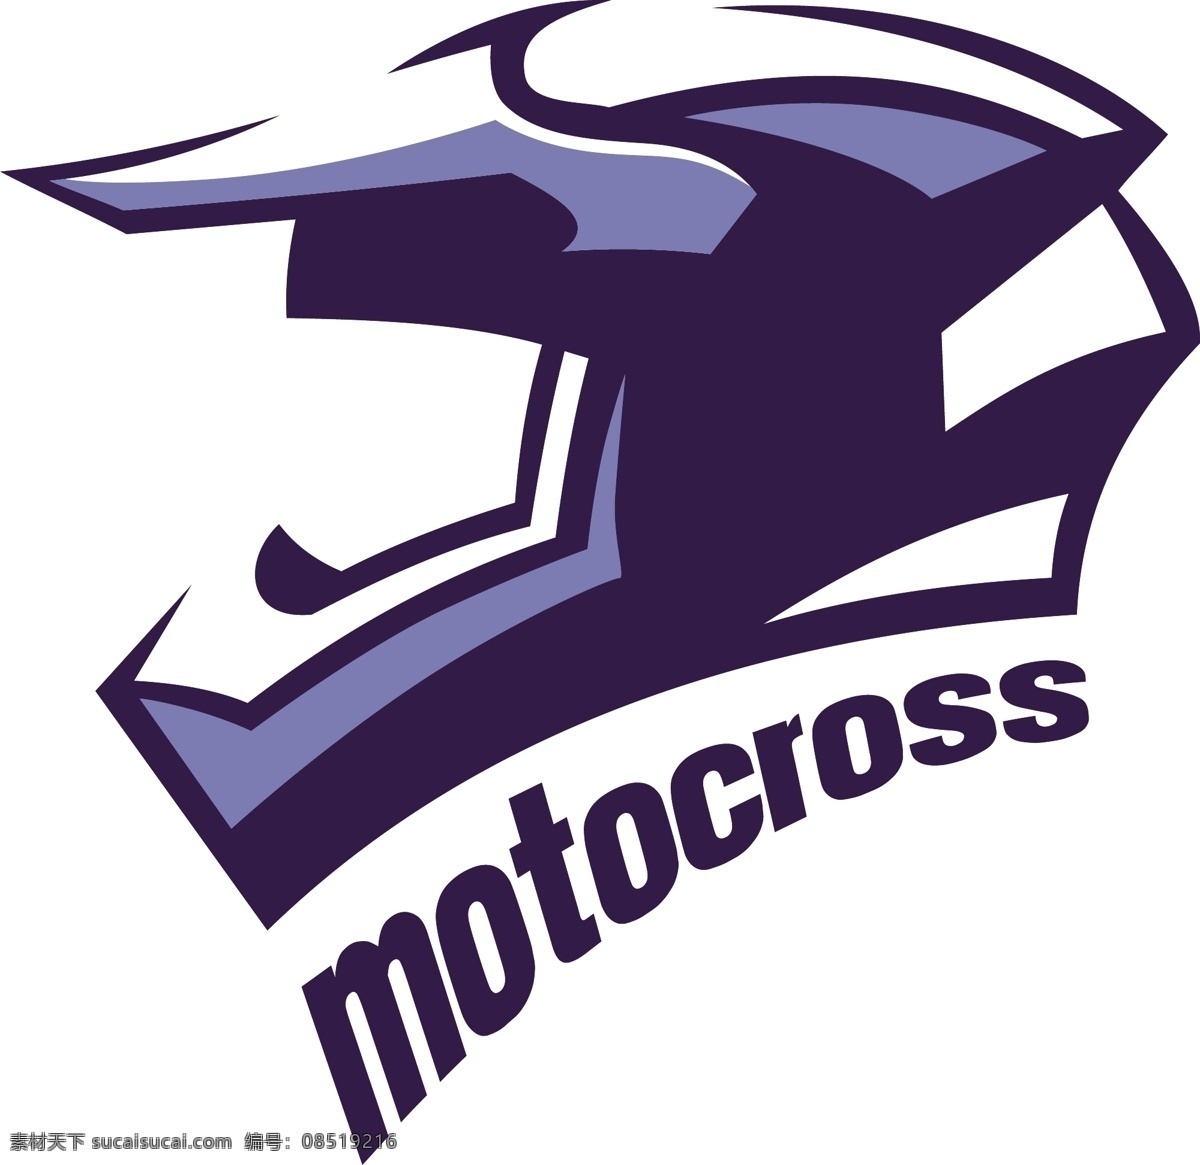 蓝色 摩托车 头盔 矢量 蓝色标签 体育比赛 体育竞赛 蓝色头盔 头盔logo logo设计 标志图标 公共标识标志